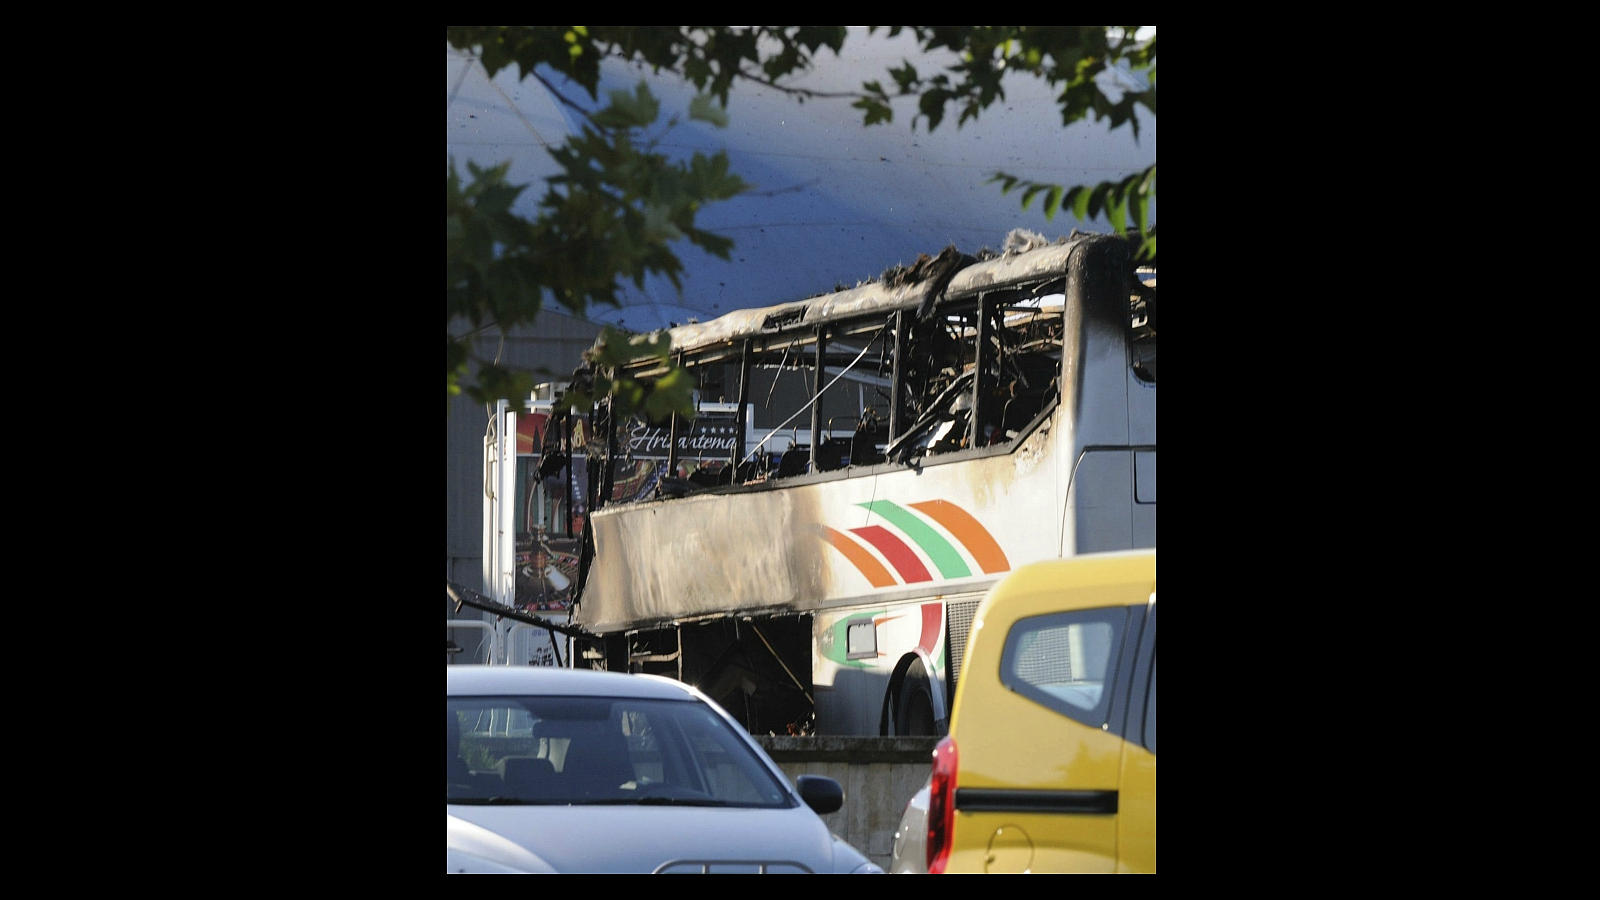 El 18 de julio de 2012, cinco turistas israelíes murieron en el aeropuerto de Burgas, este del país, en un atentado con bomba contra un autobús. También murieron el chófer del autobús y el autor del atentado. Israel acusó del atentado al movimiento chiita libanés Hezbol